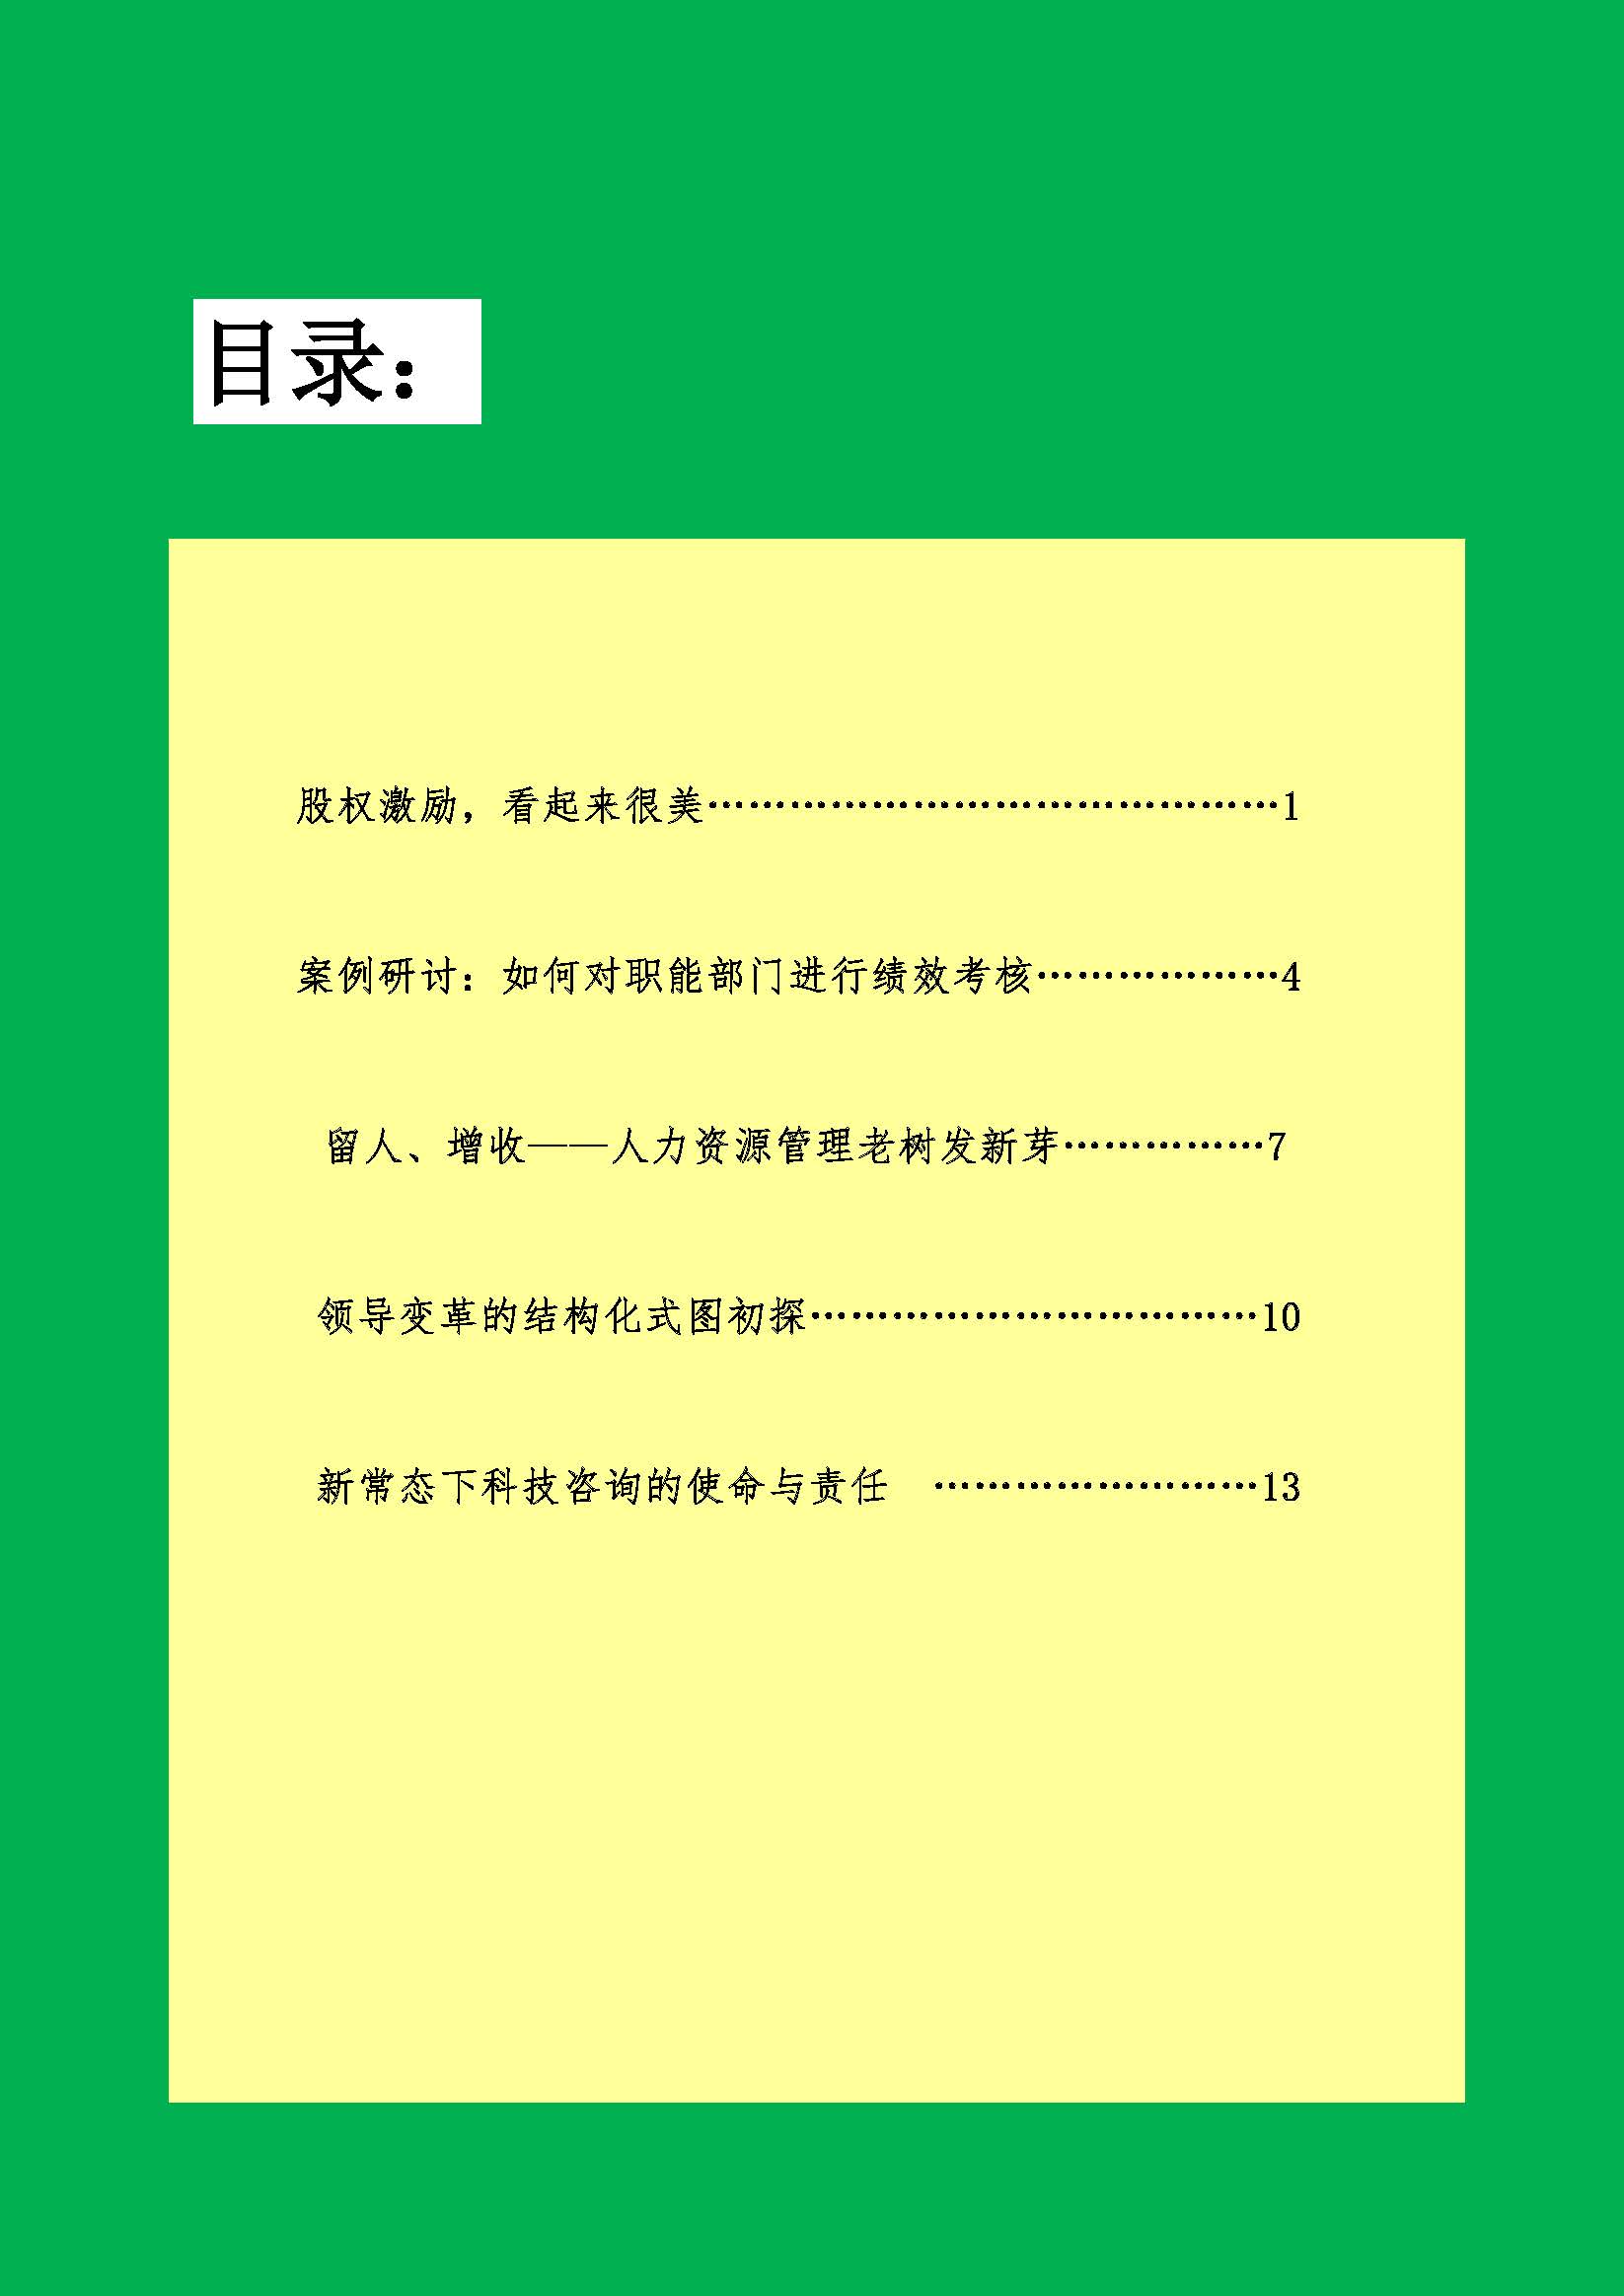 中国科技咨询协会会刊（第四十期）初稿_页面_02.jpg